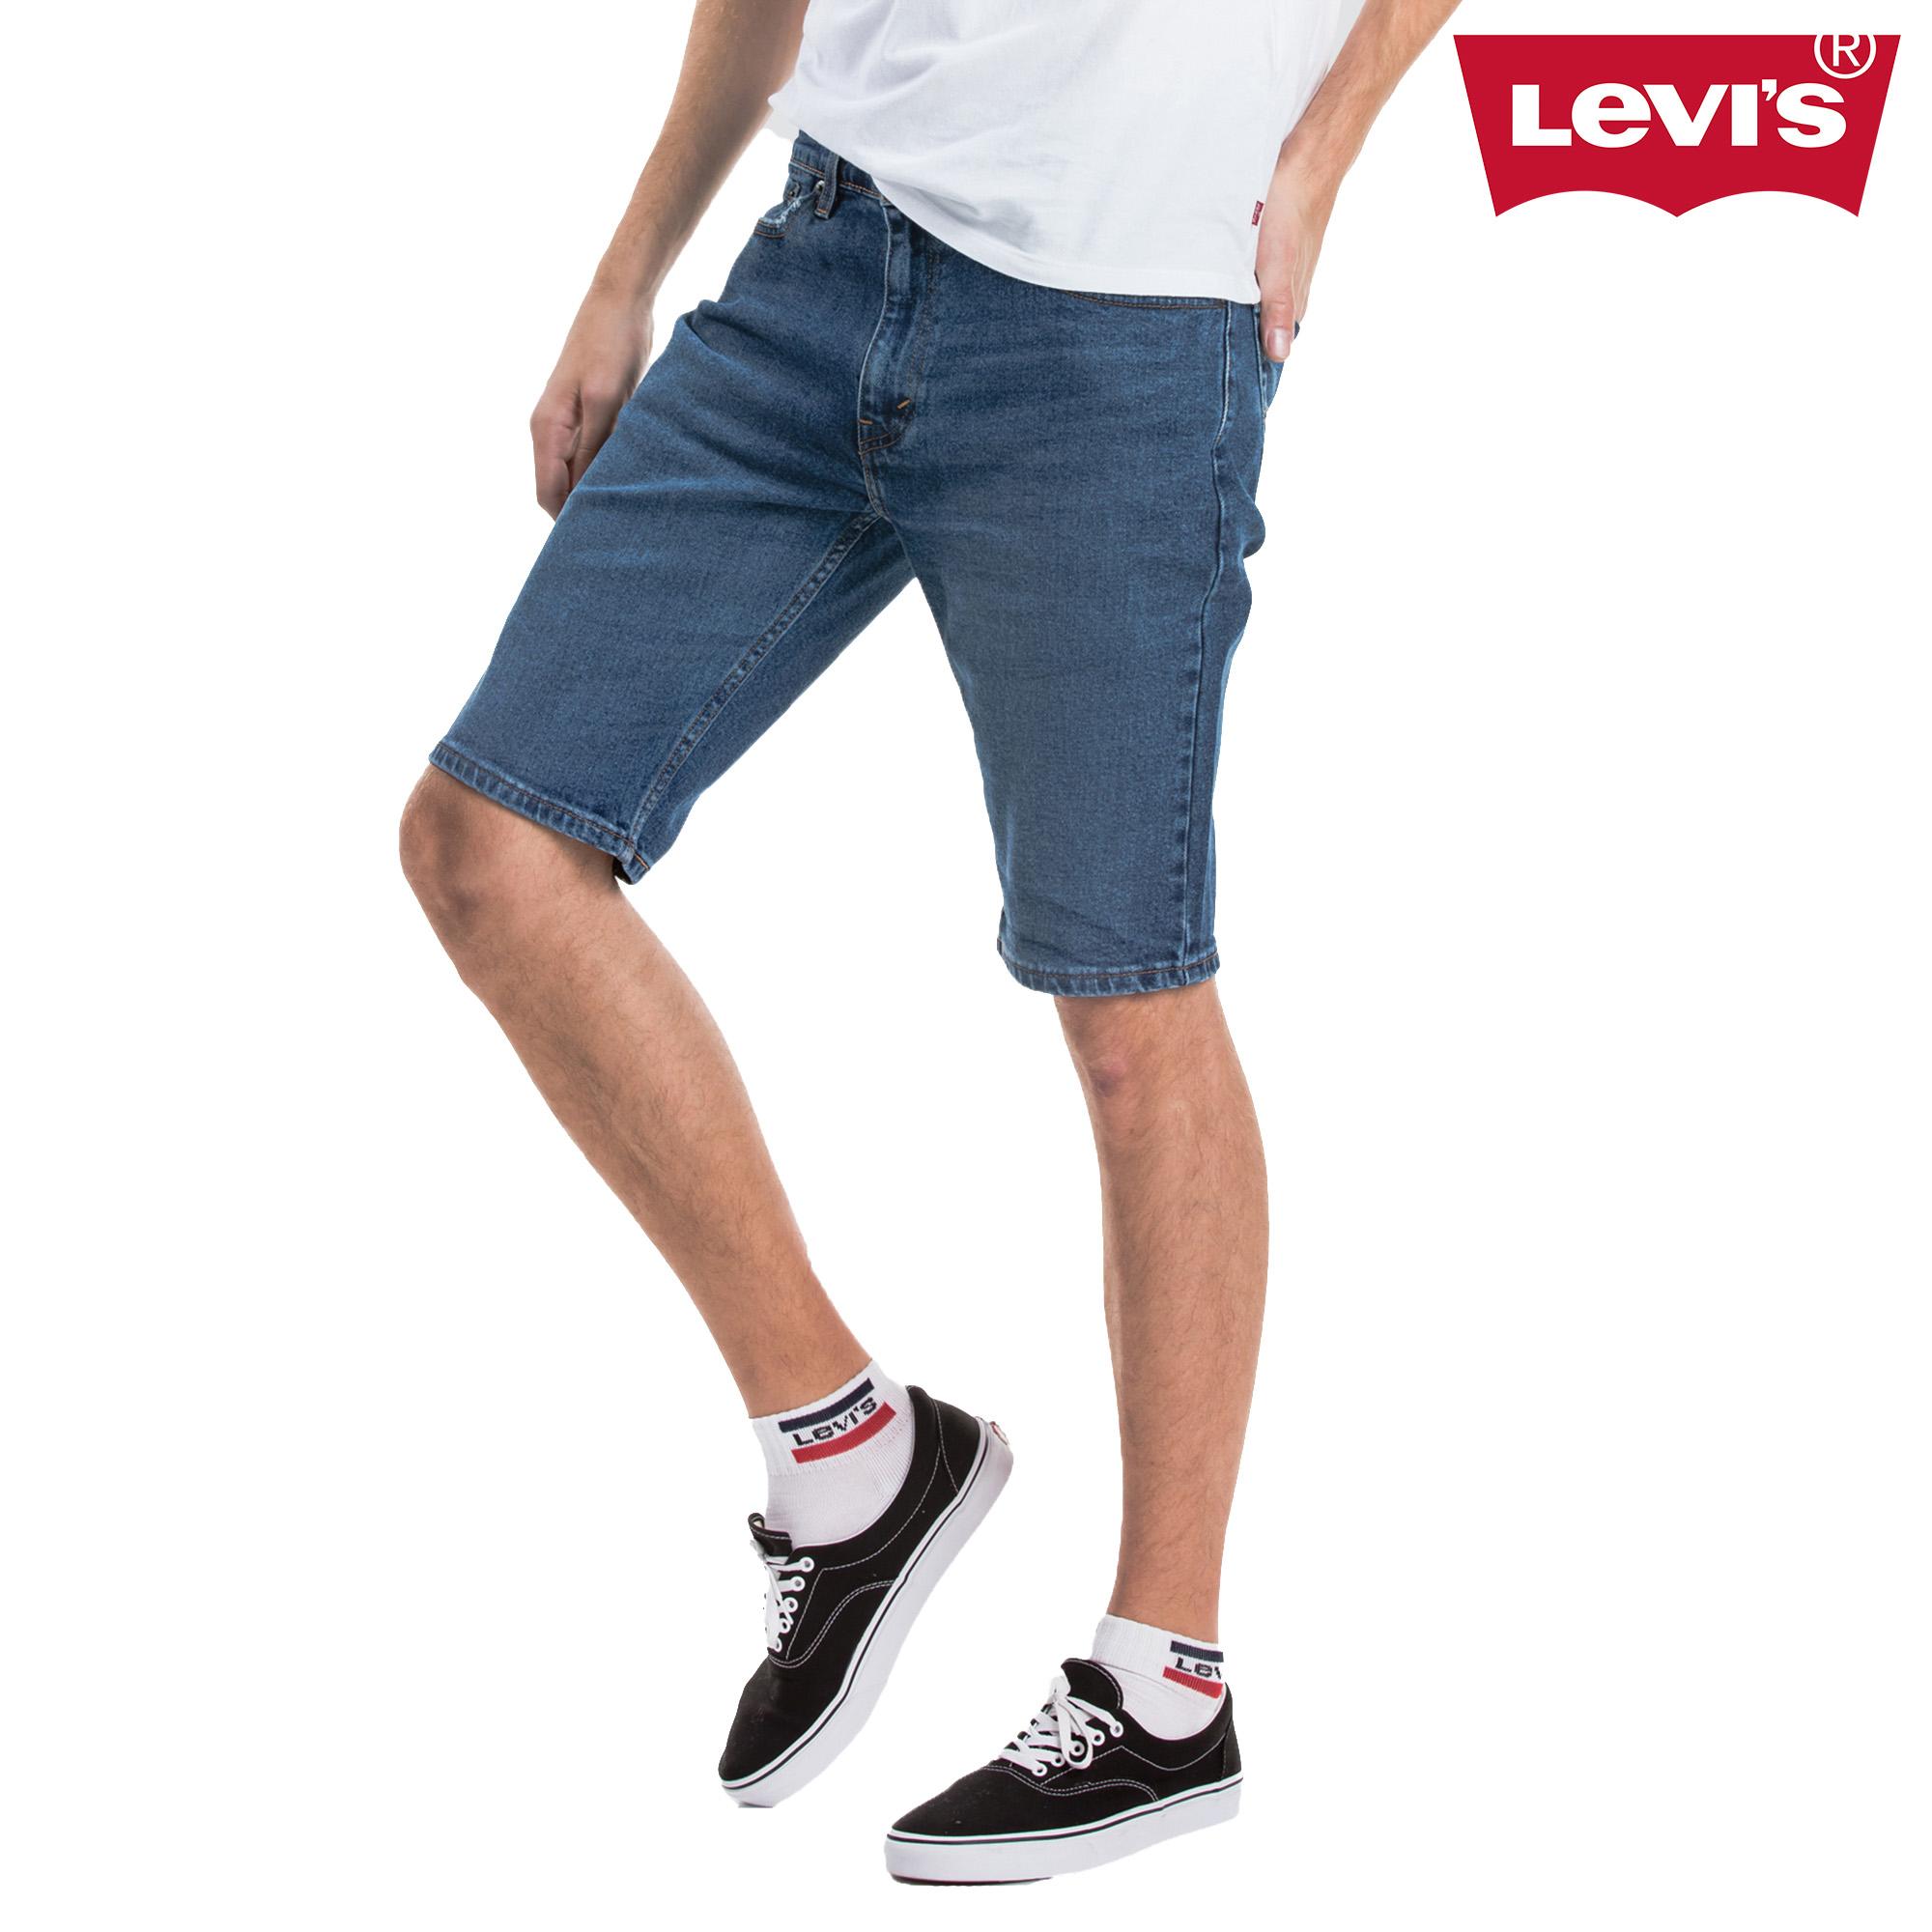 levis 505 shorts mens